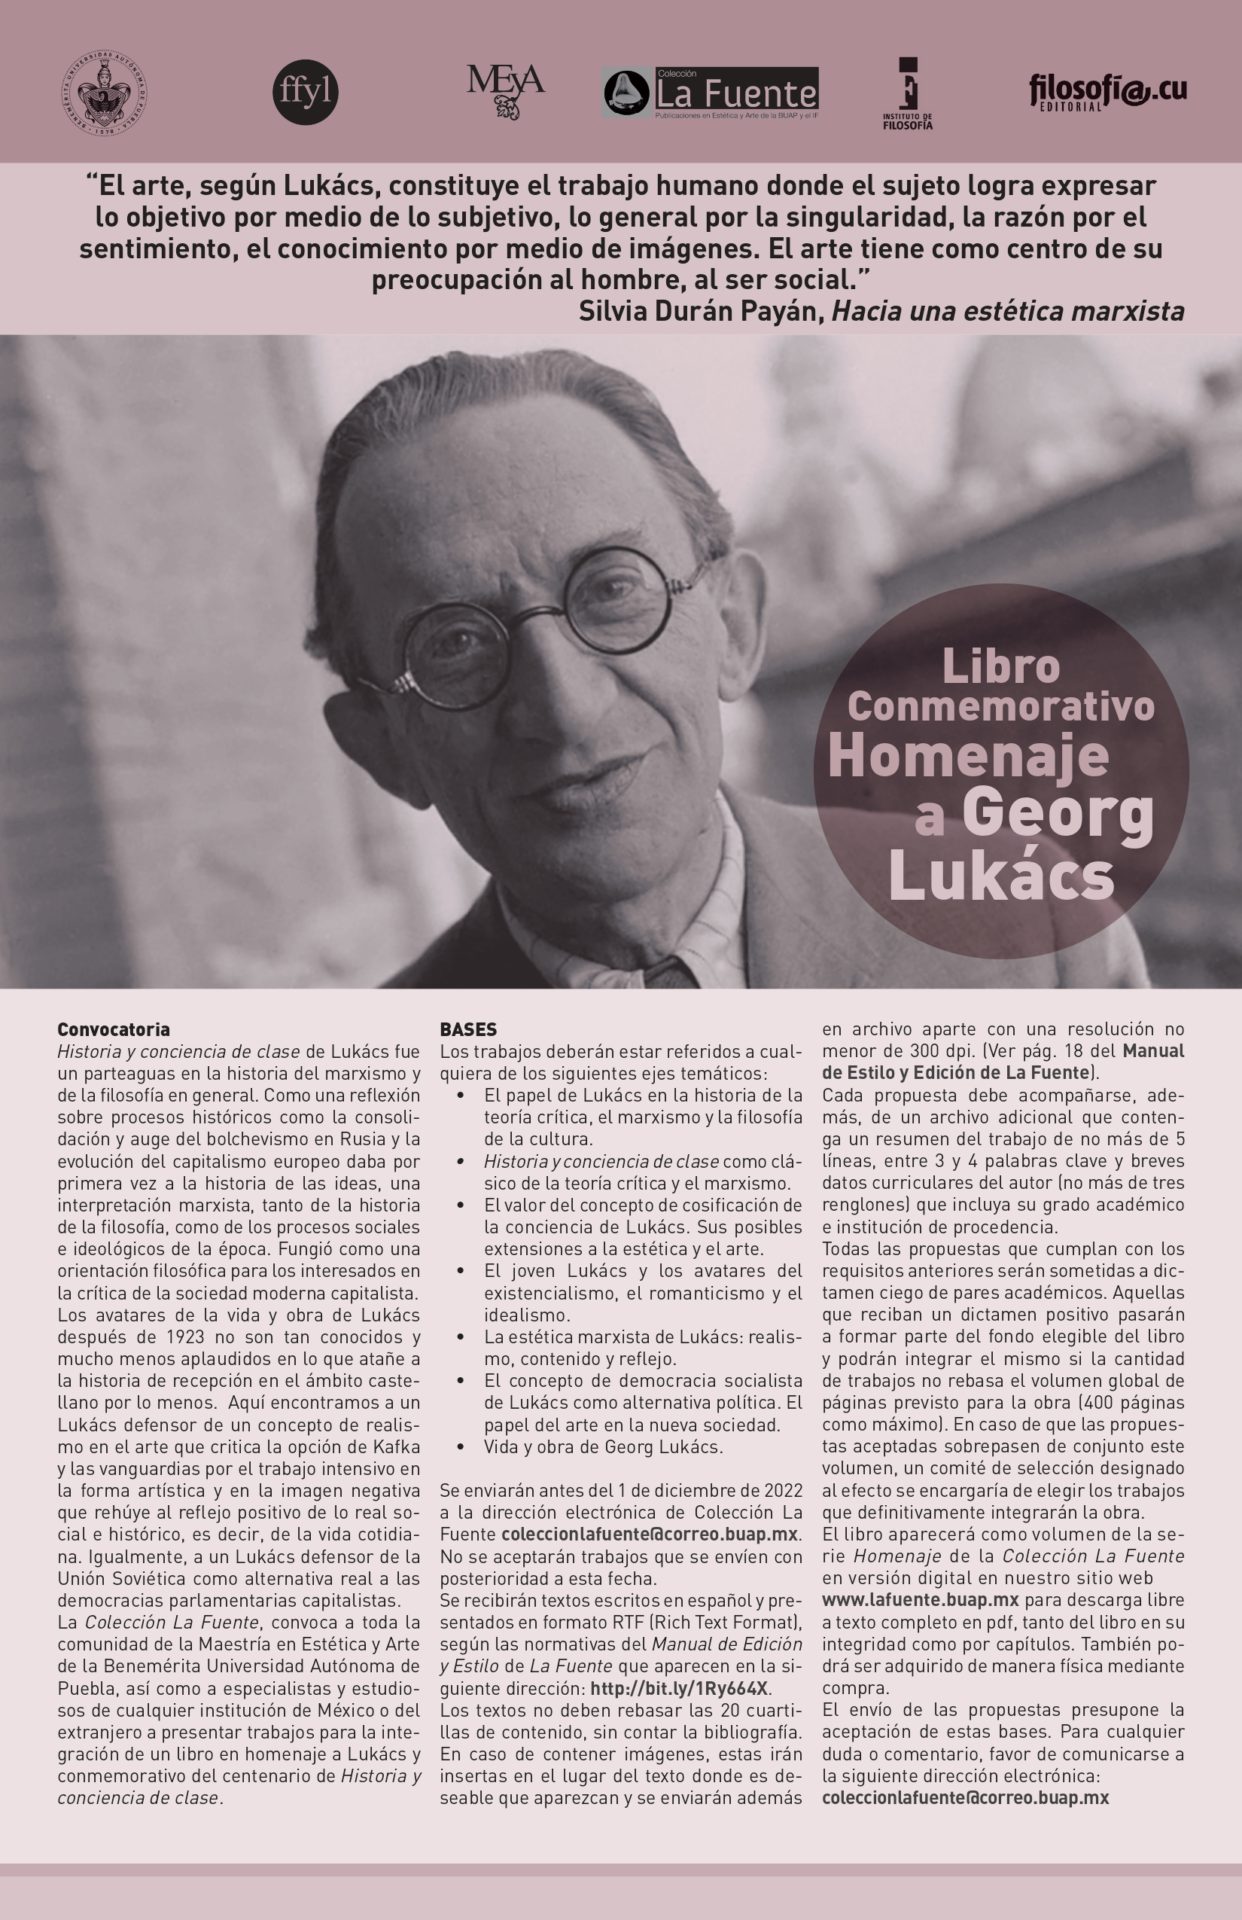 Convocatoria de BUAP y la fuente sobre georg Lukács